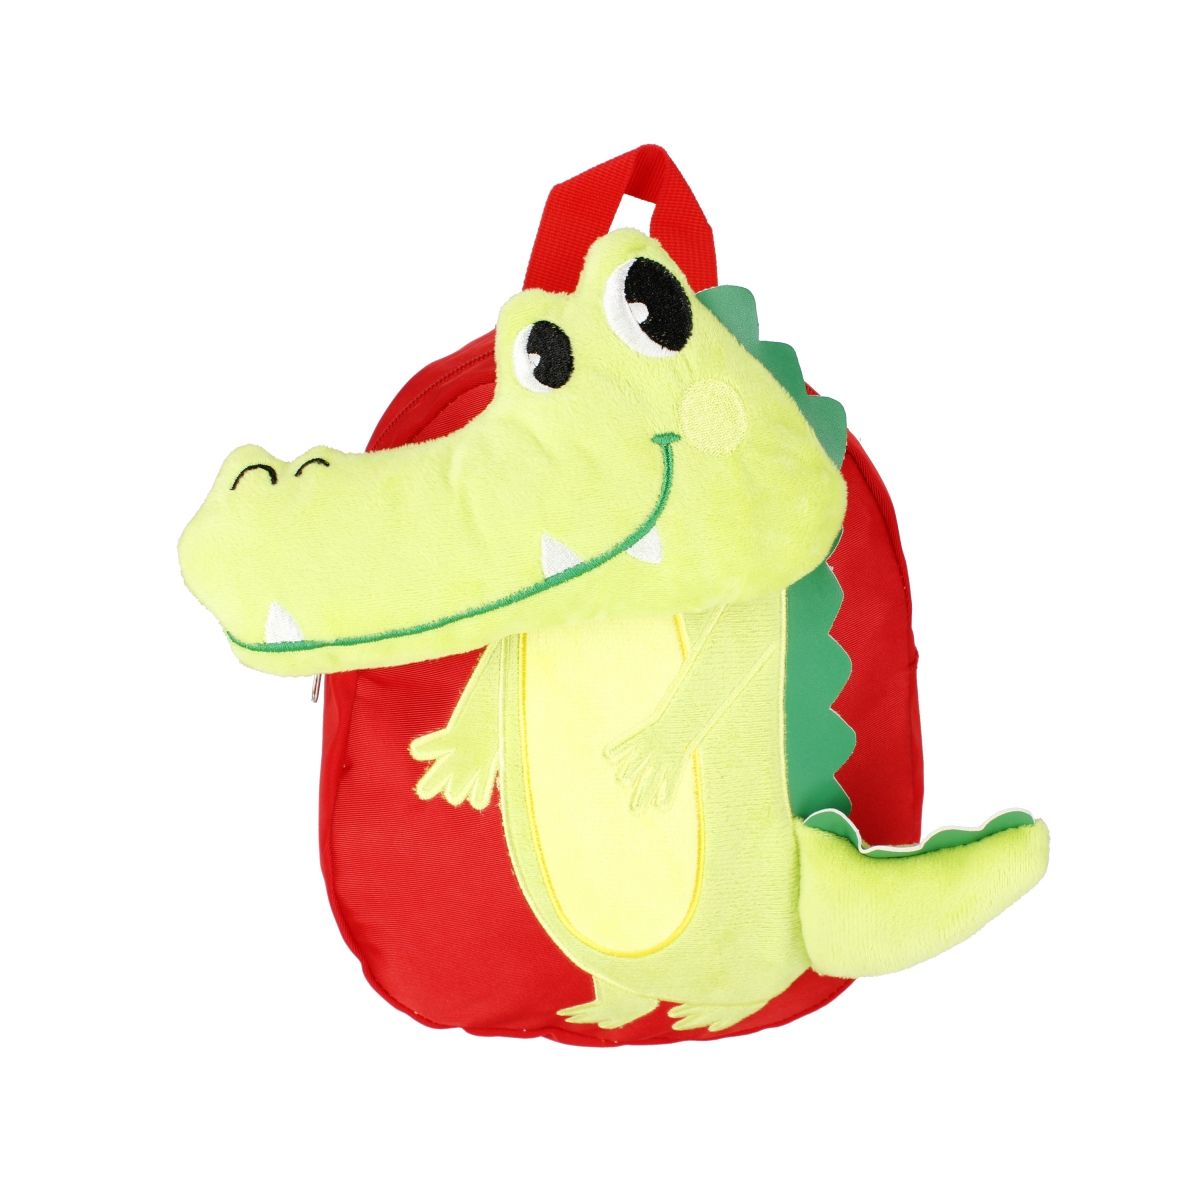 Plecak Starpak Krokodyl (482188)